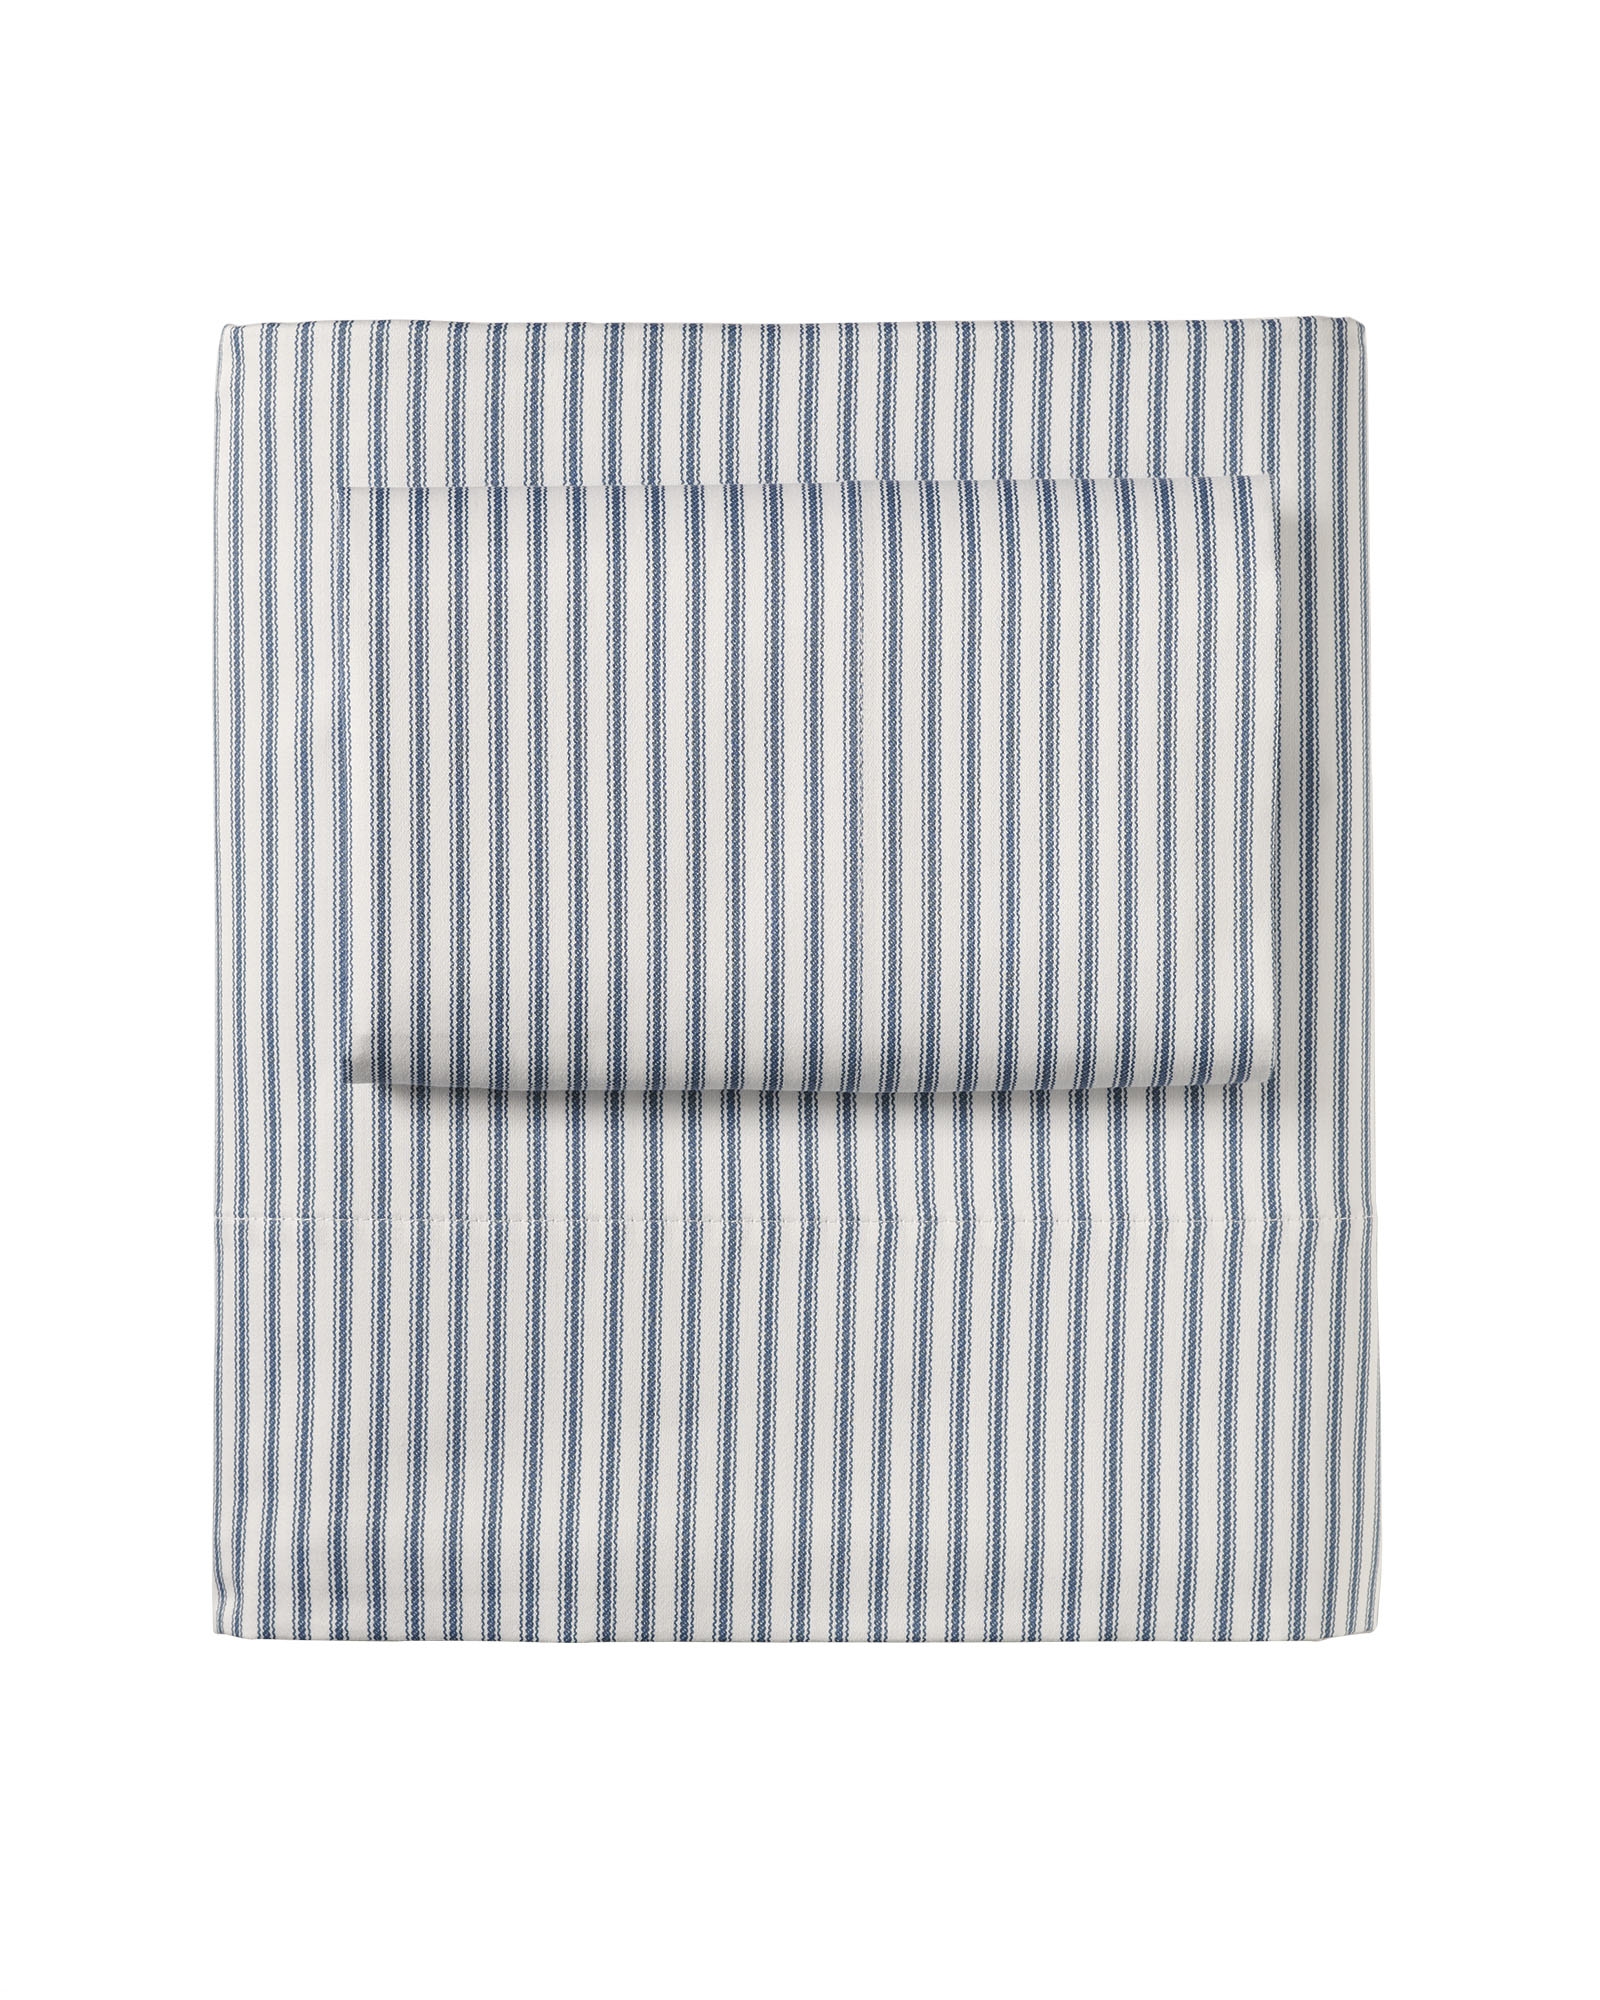 Ticking Stripe Sheet Set - Queen - Image 0